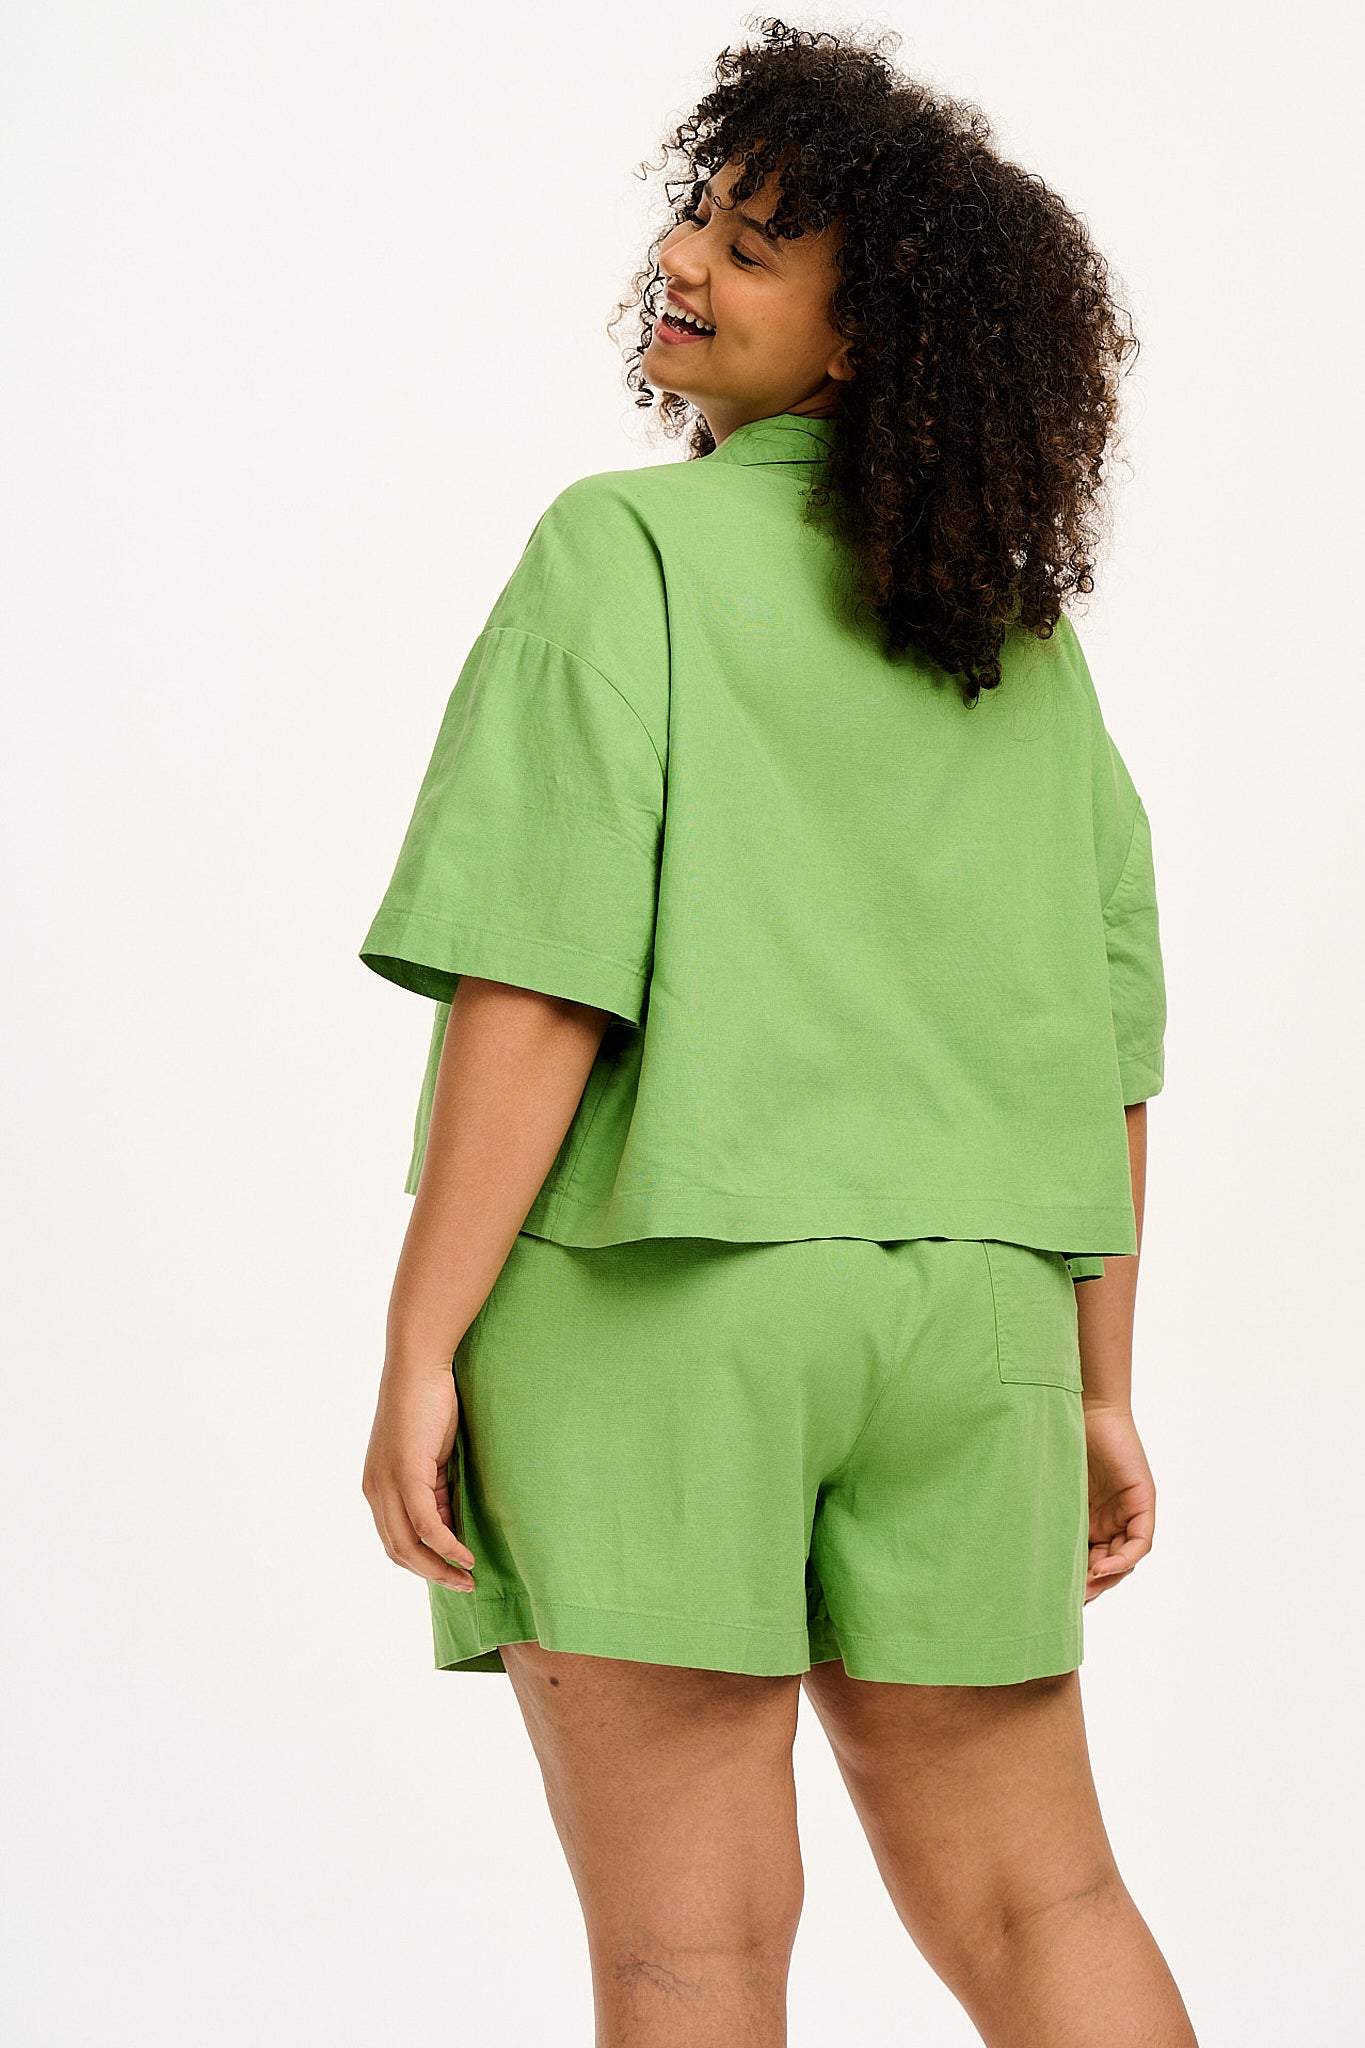 Alfie Shirt: ORGANIC COTTON & LINEN - Matcha Green